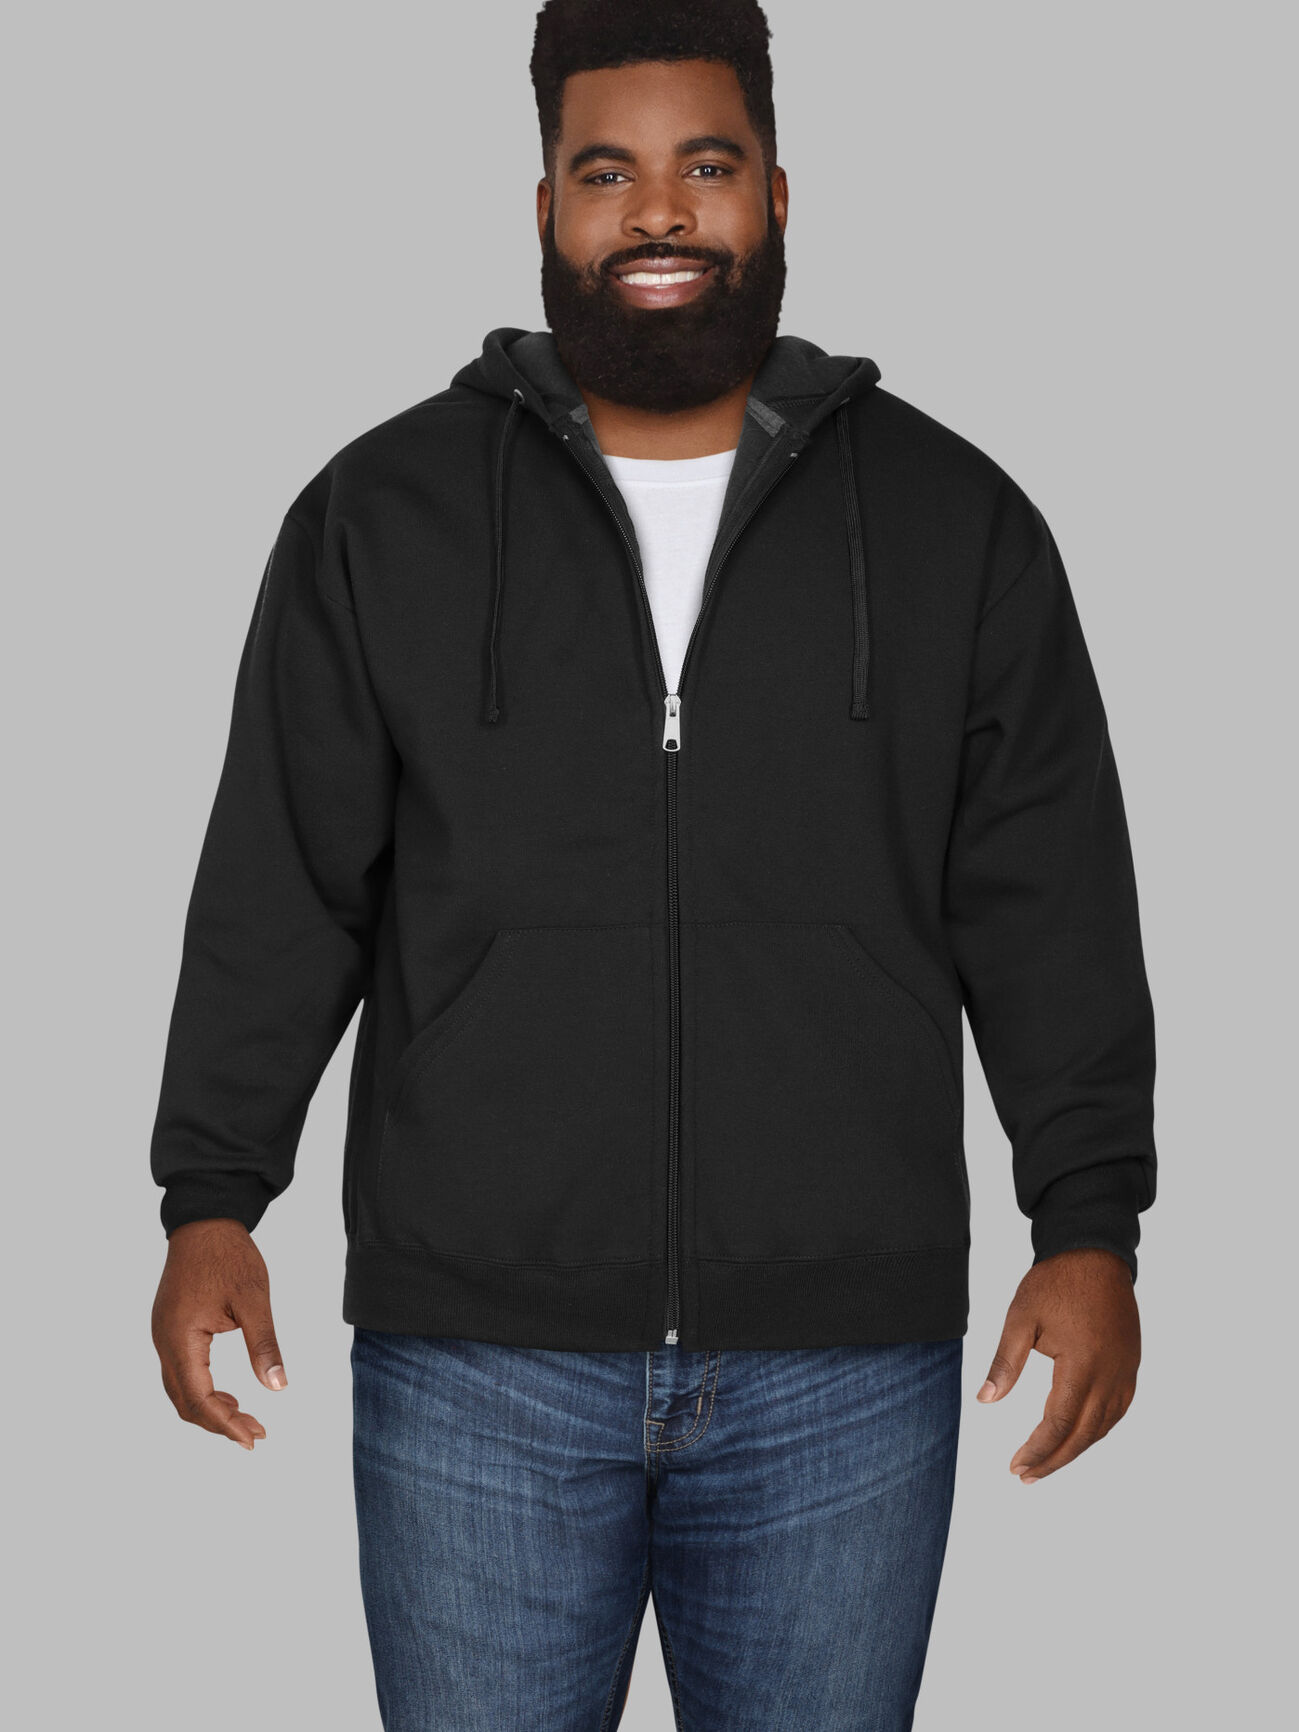 Big Men's Eversoft®  Fleece Full Zip Hoodie Sweatshirt Rich Black